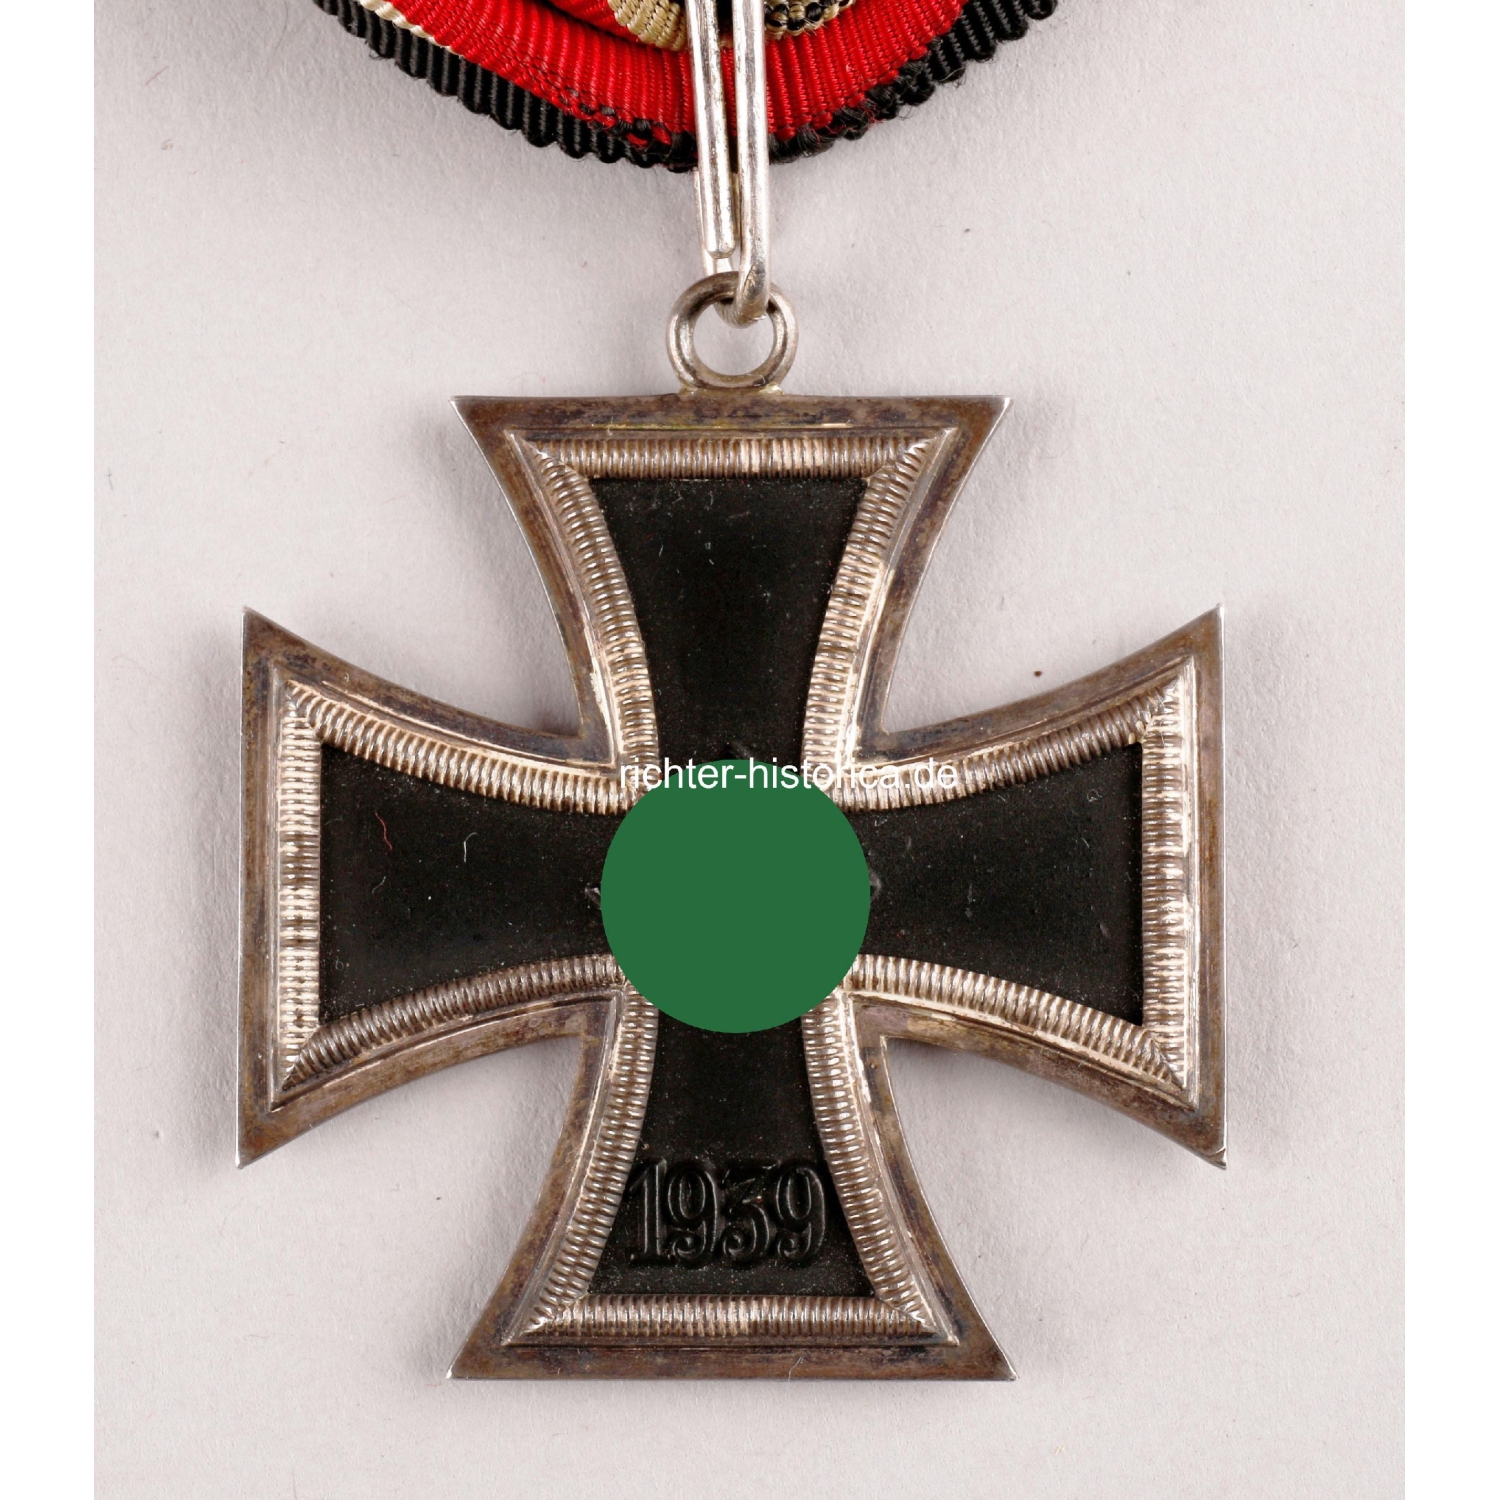 Ritterkreuz des Eisernen Kreuzes Herst "4" 935 am Trageband, selten!